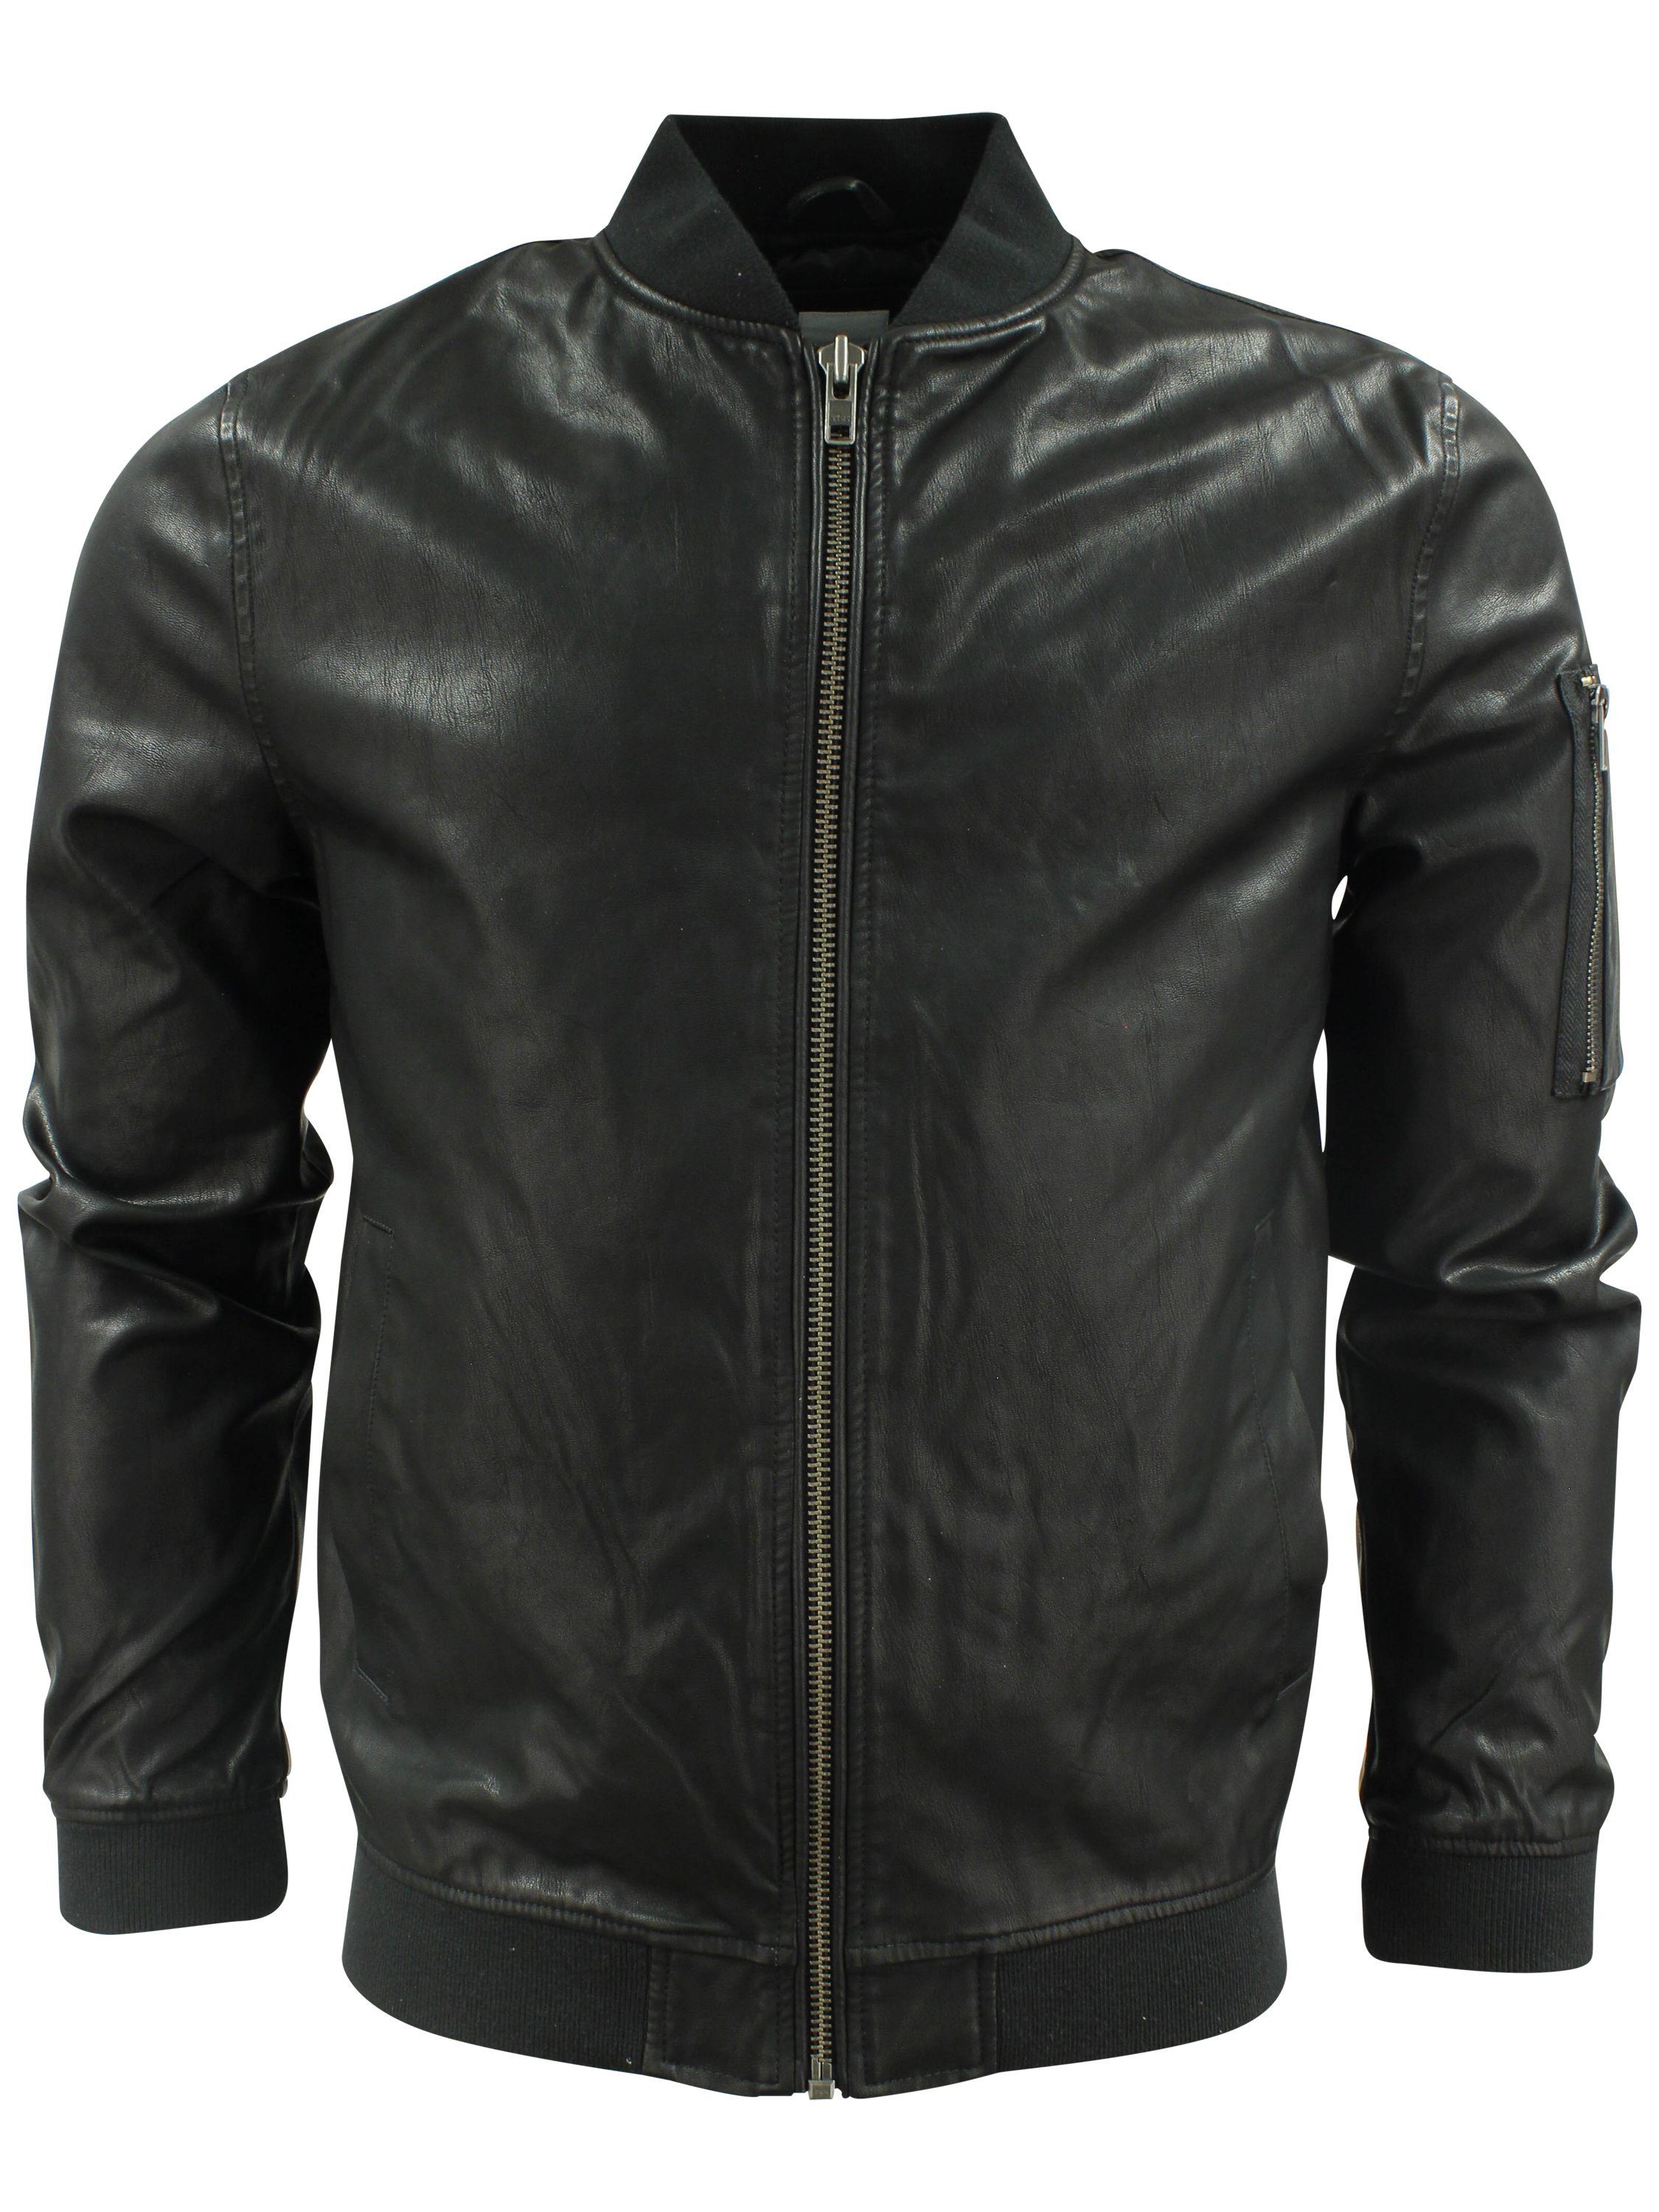 Buy Lindbergh 'Imitation' Leather Jacket - Black